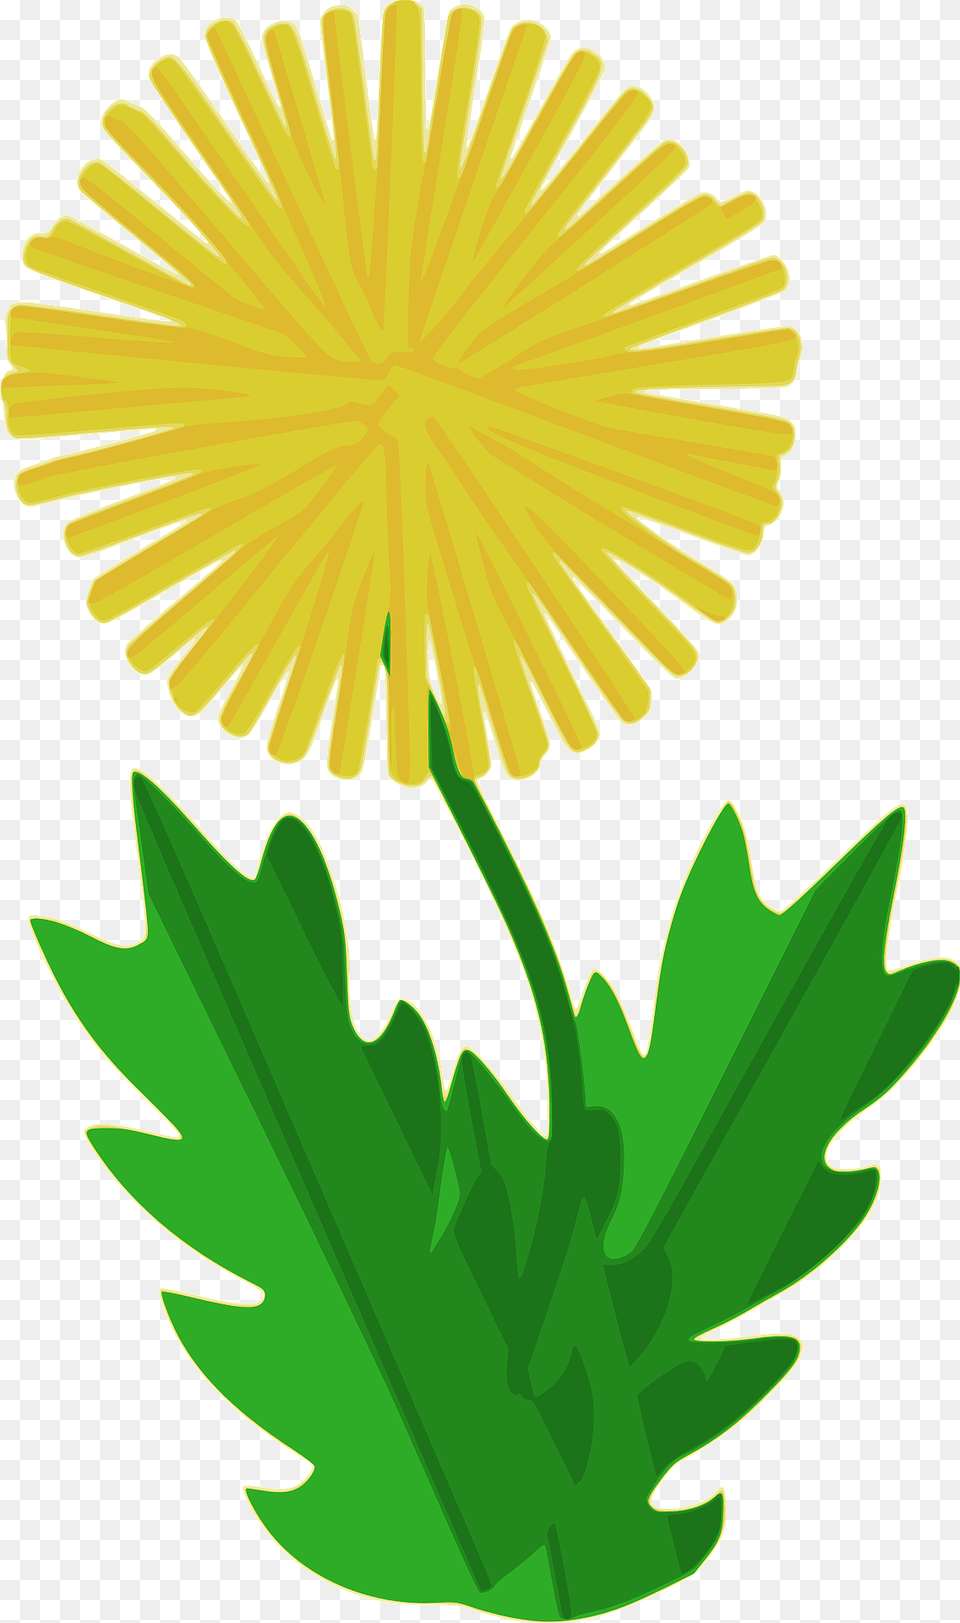 Dandelion Clipart, Flower, Plant, Dynamite, Weapon Png